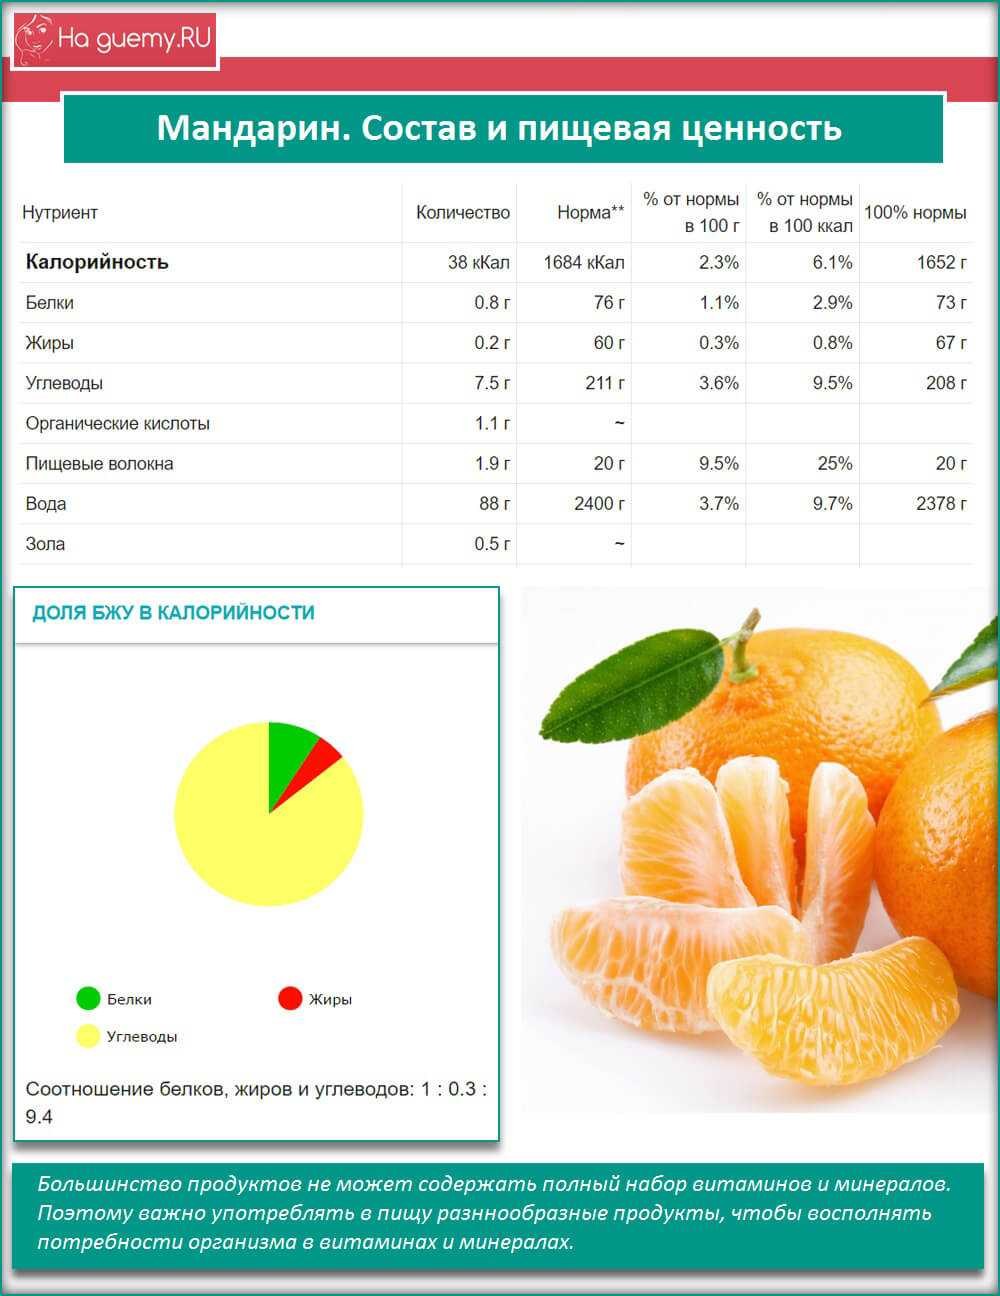 Апельсин килокалории. Мандарин состав на 100 грамм витамины. Пищевая ценность мандарина в 100 граммах. Мандарин калорийность на 100 грамм. Энергетическая ценность апельсина в 100 граммах.